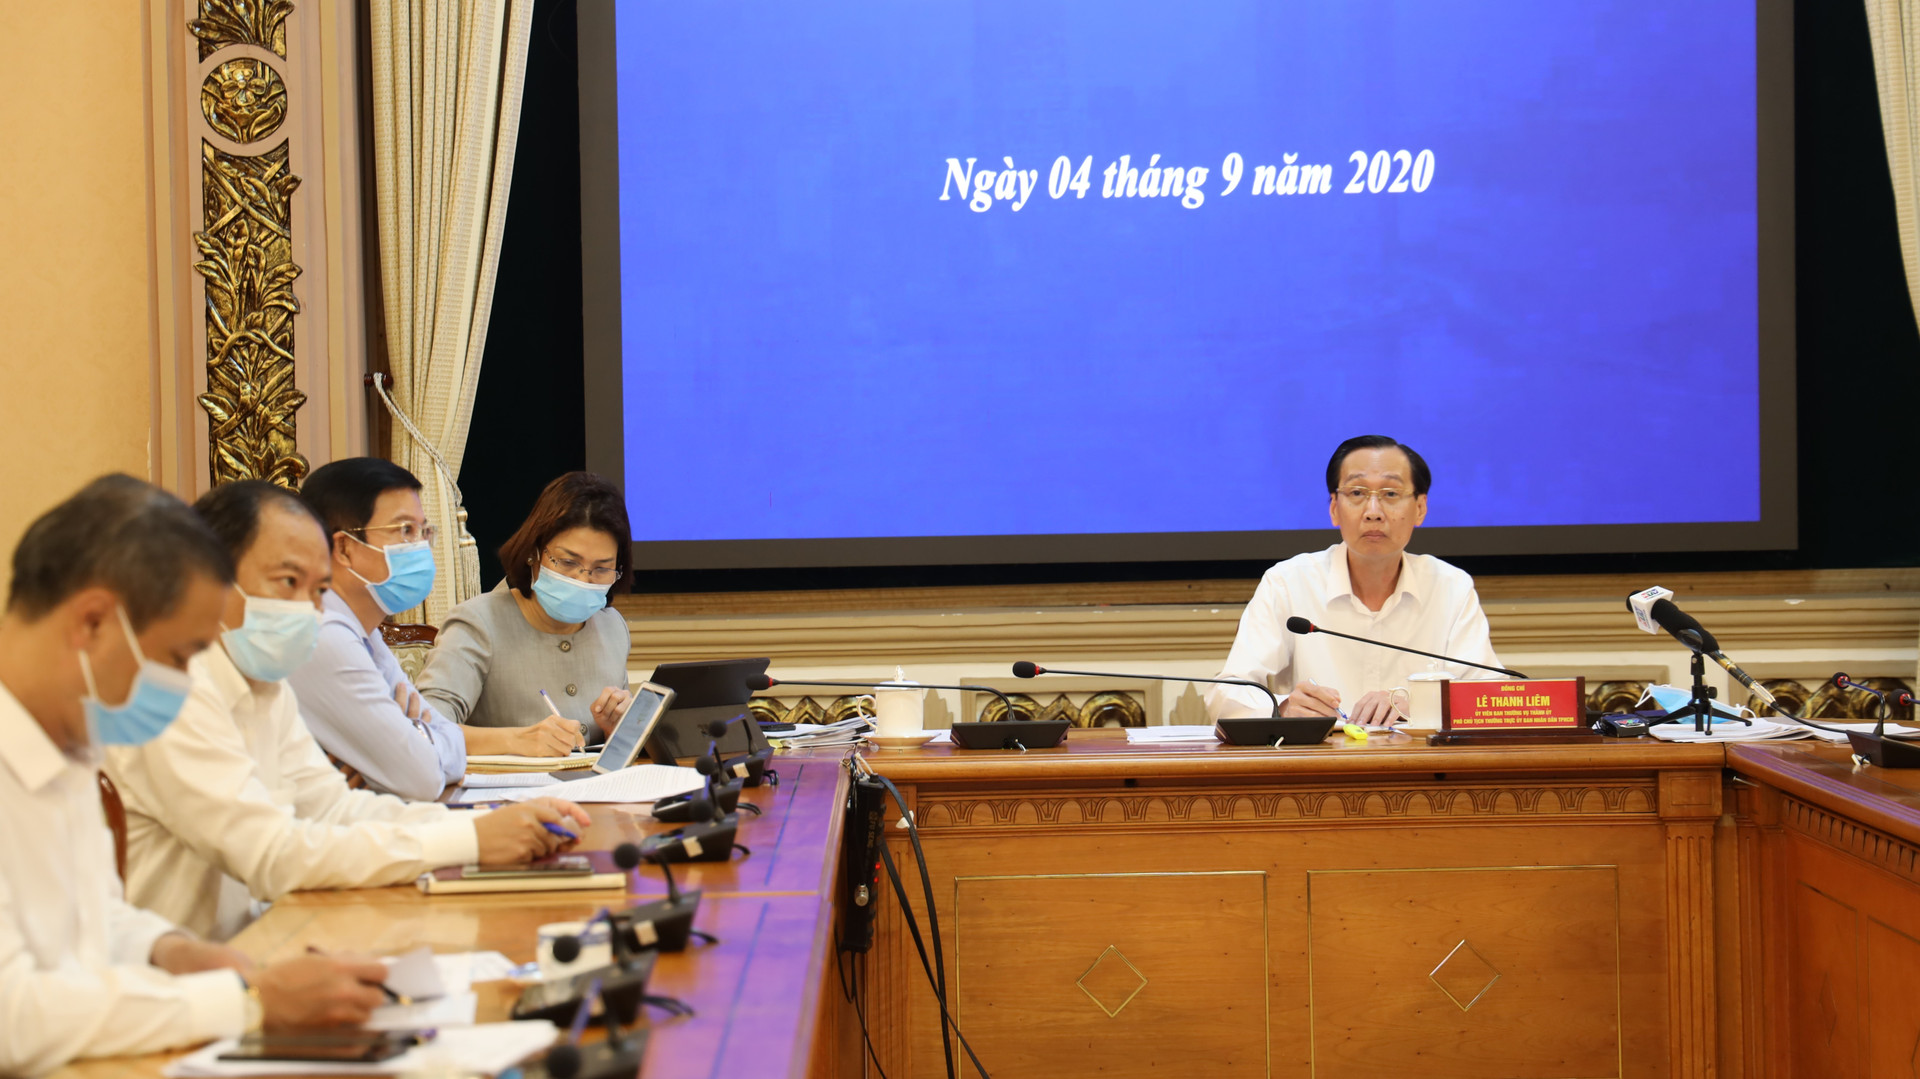 Phó Chủ tịch Thường trực UBND TP HCM Lê Thanh Liêm chủ trì cuộc họp trực tuyến Chính phủ tại điểm cầu TP HCM.